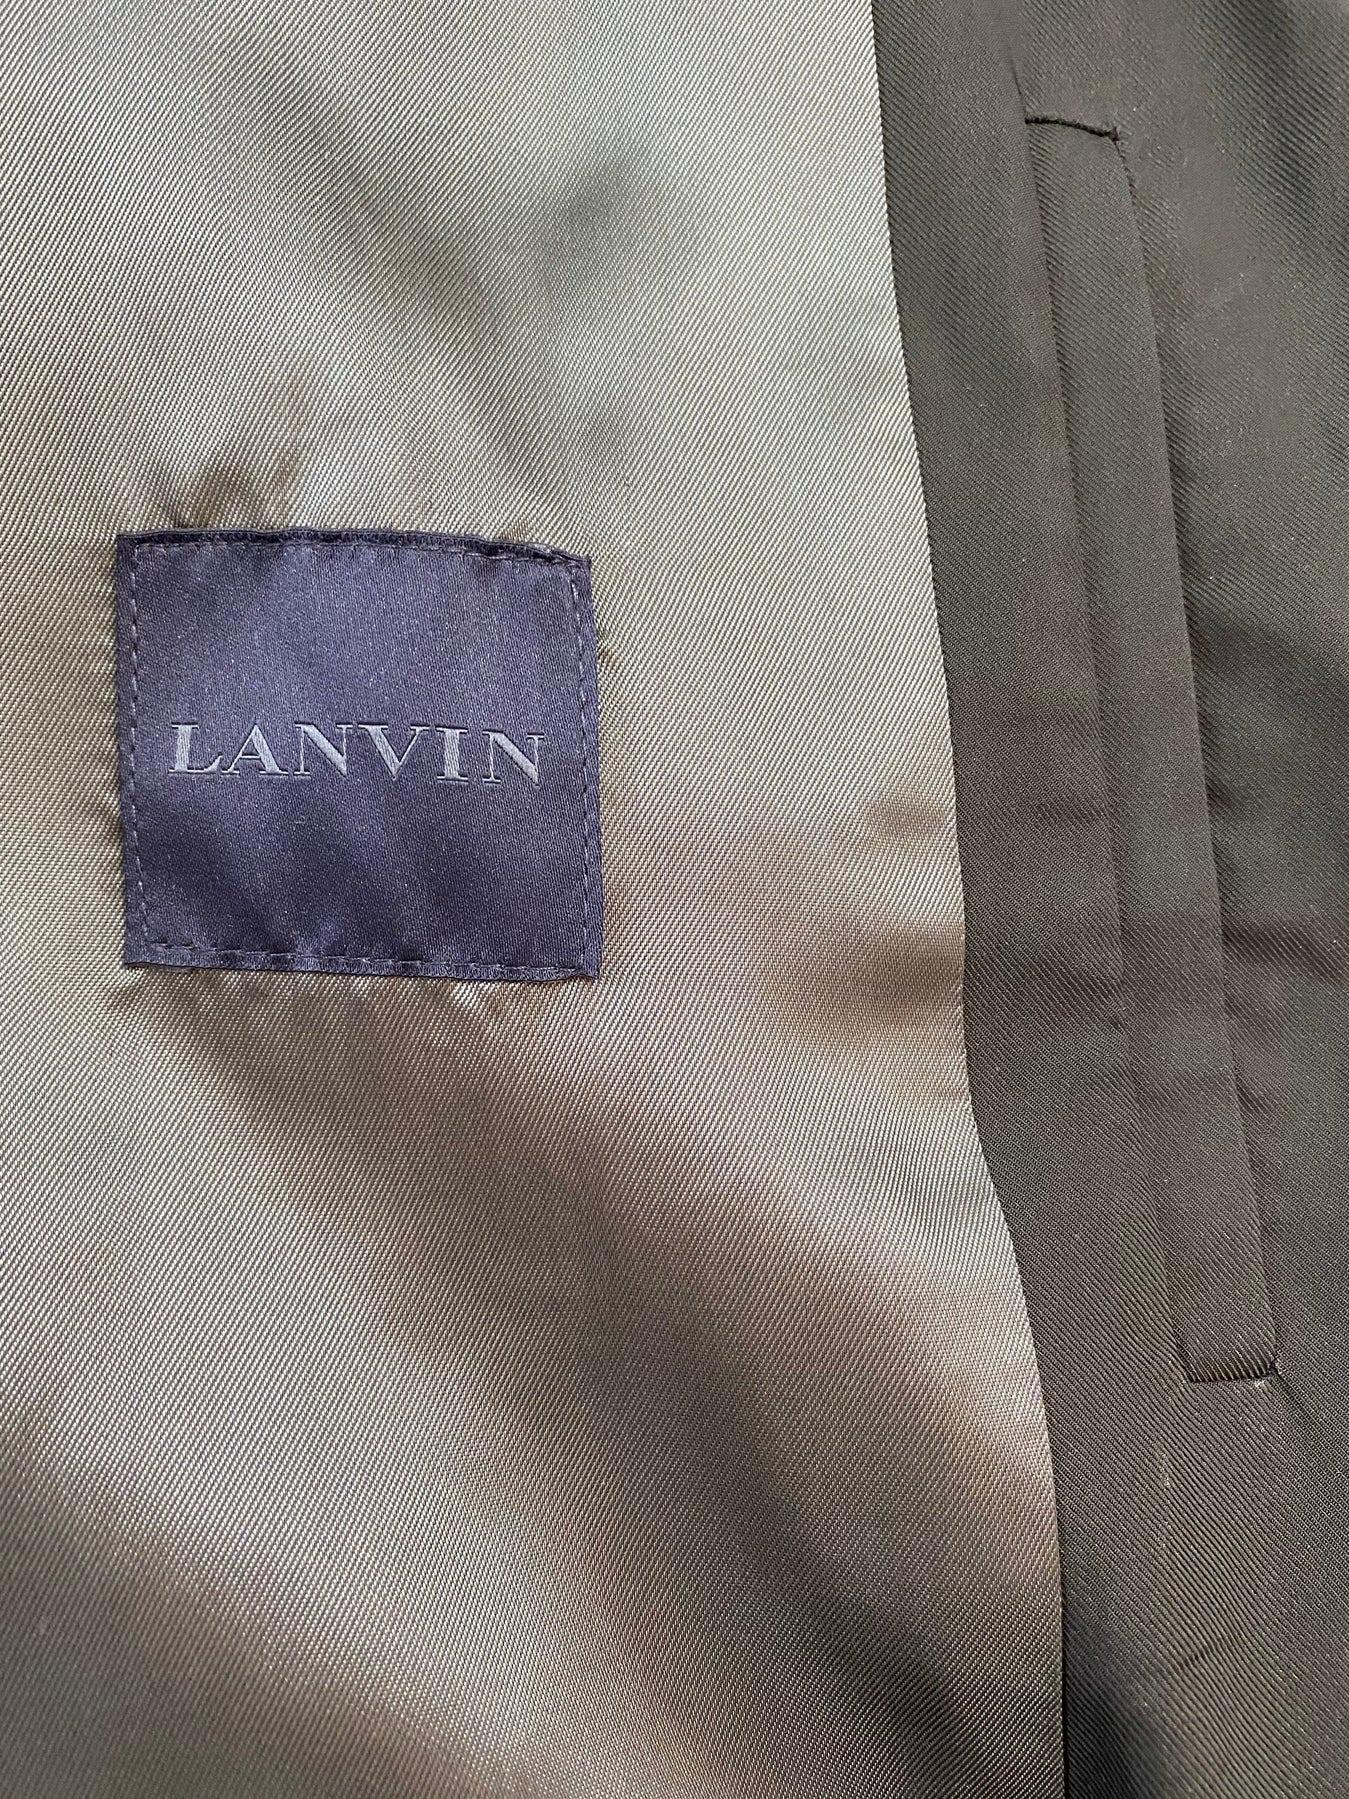 Lanvin Satin Bomber Jacket For Sale 2